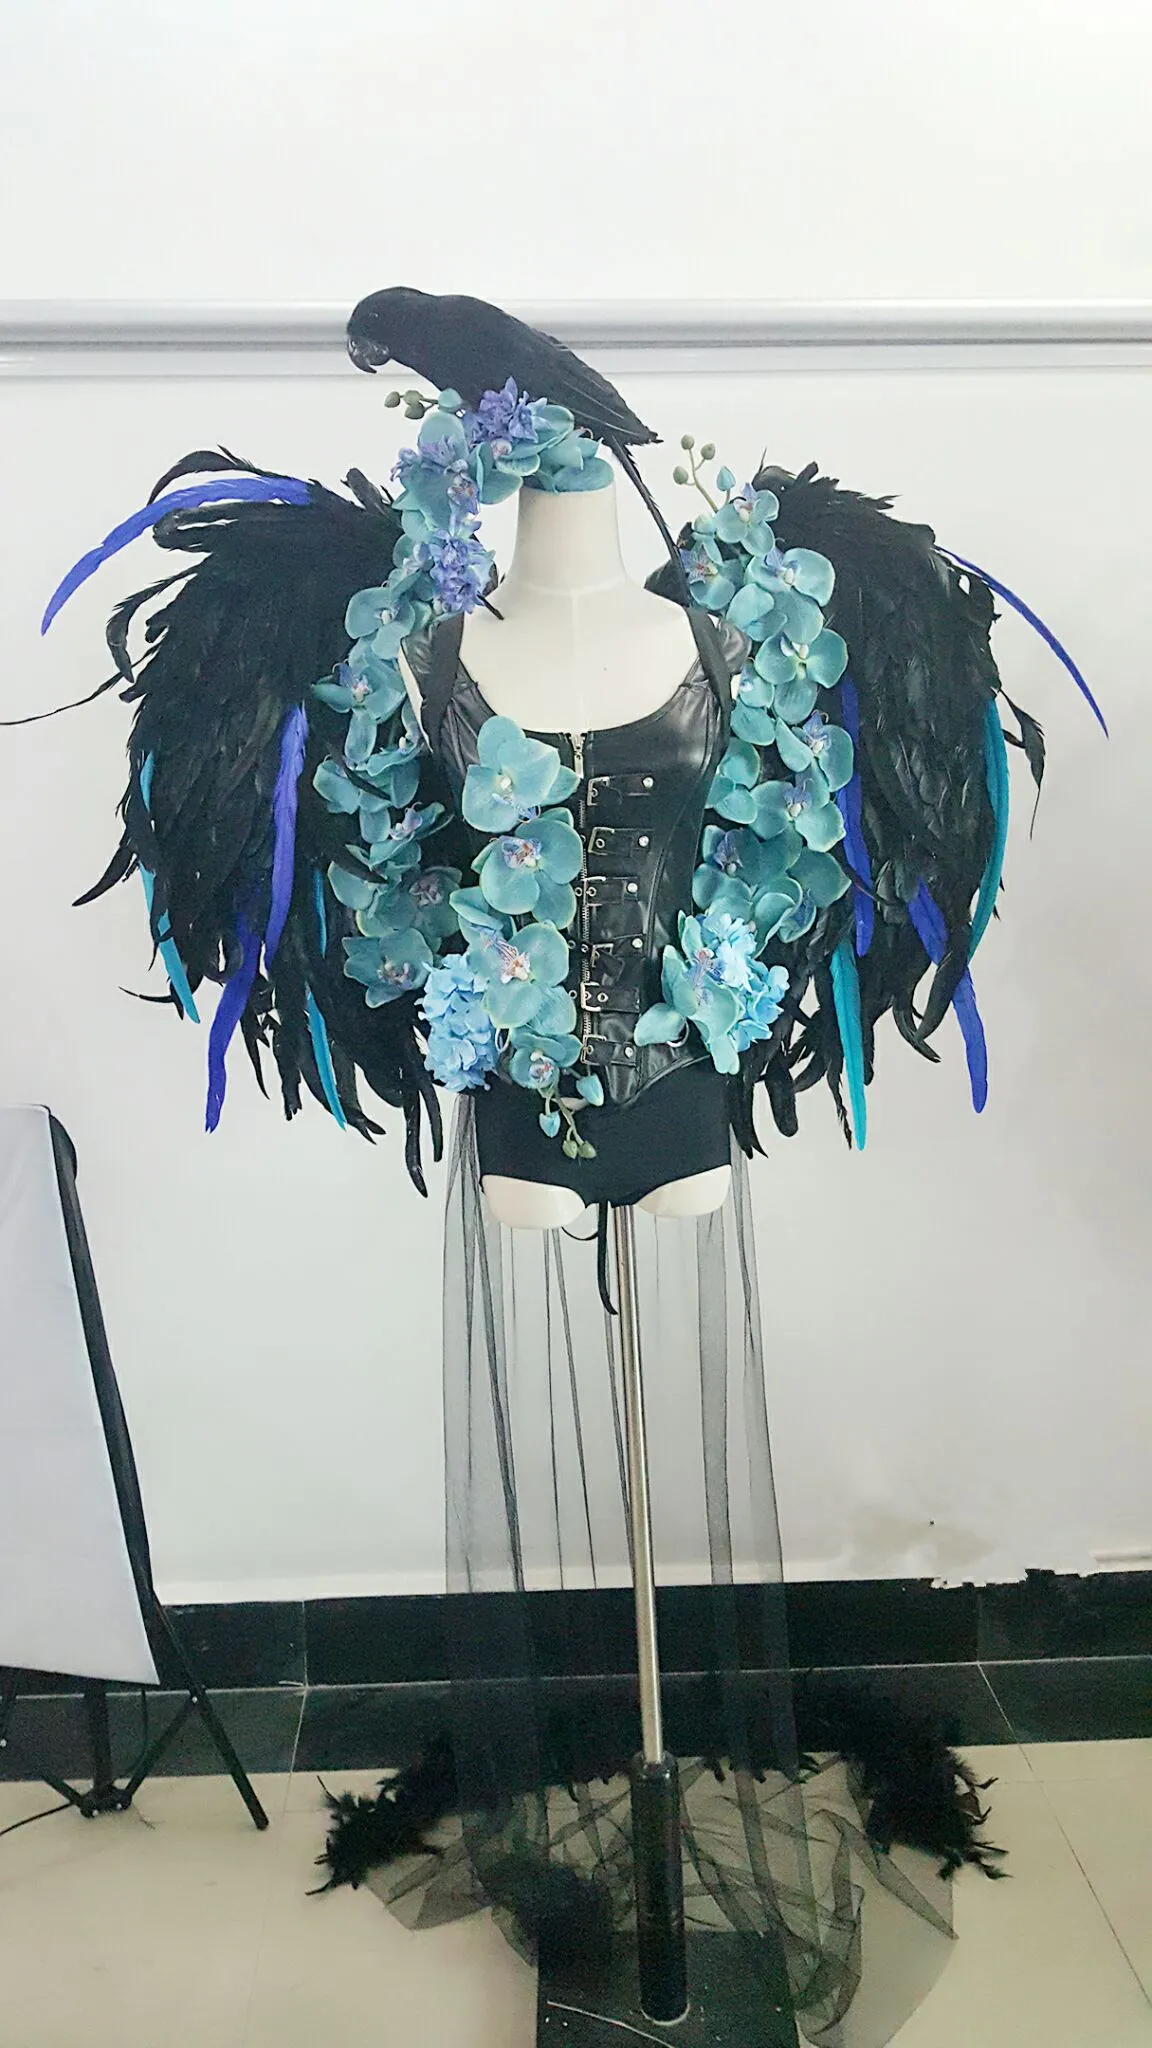 Black Angel Feather Wings Magazine Shooting Display Party Bruiloft Decoratie Benodigdheden Model Toon Props EMS gratis verzending